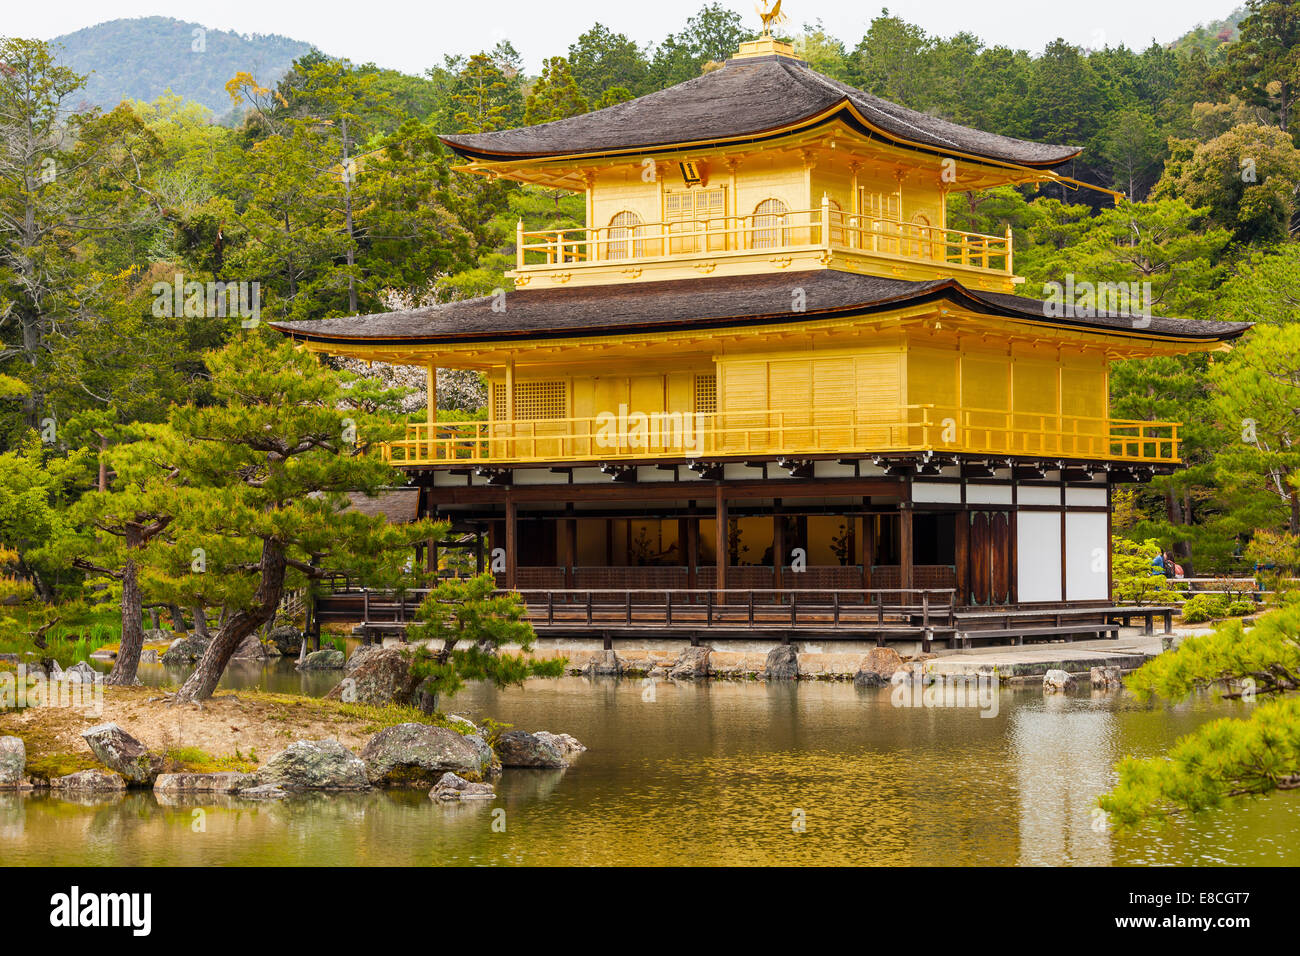 Kinkakuji Temple The Golden Pavilion In Kyoto Japan Stock Photo Alamy